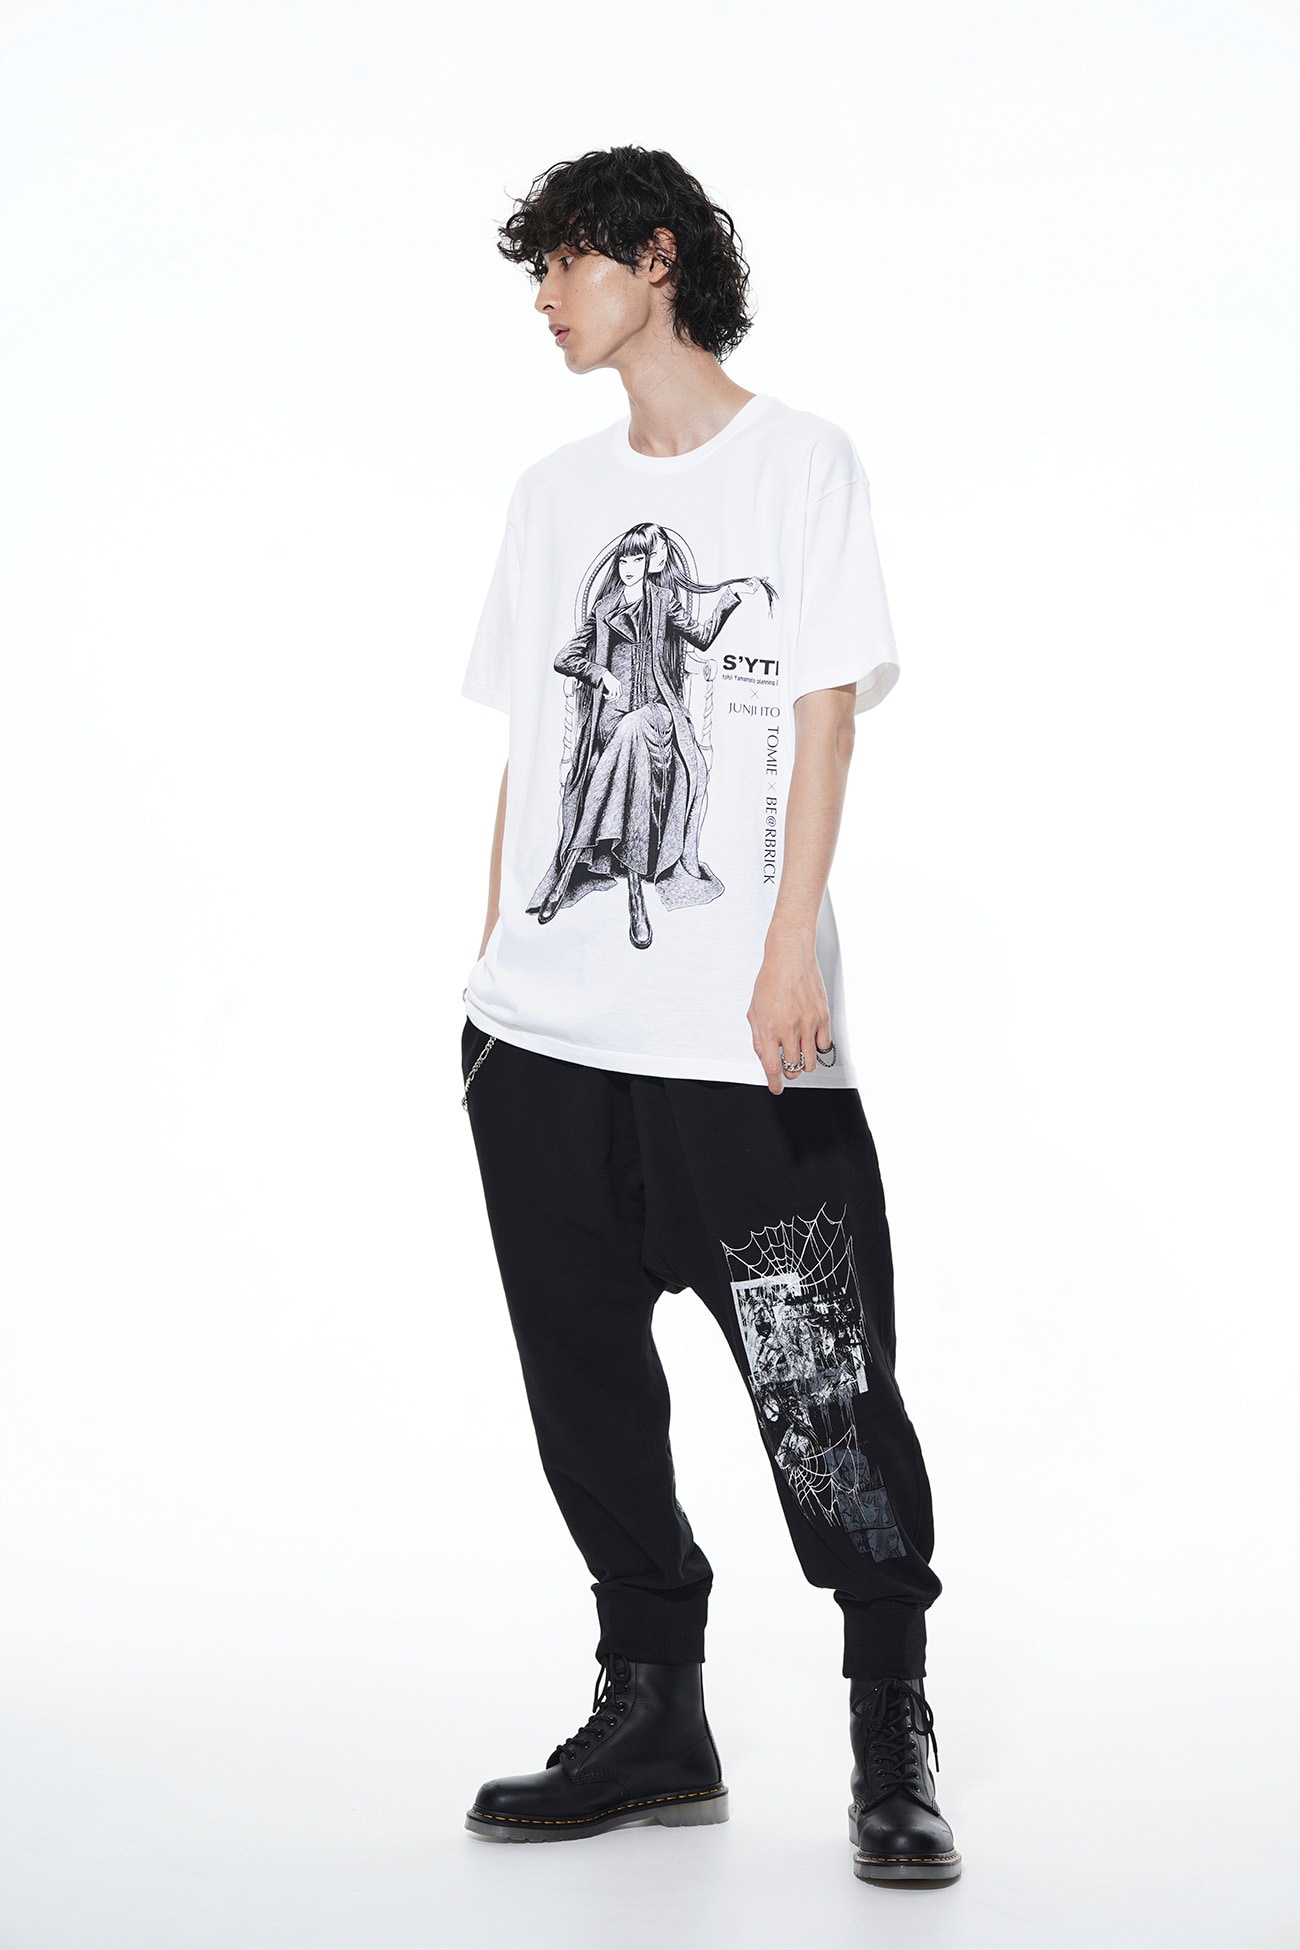 【9/1 12:00発売】BE@RBRICK × Junji ITO "Tomie" Wearing Yohji Yamamoto Lace-up Dress T-shirt